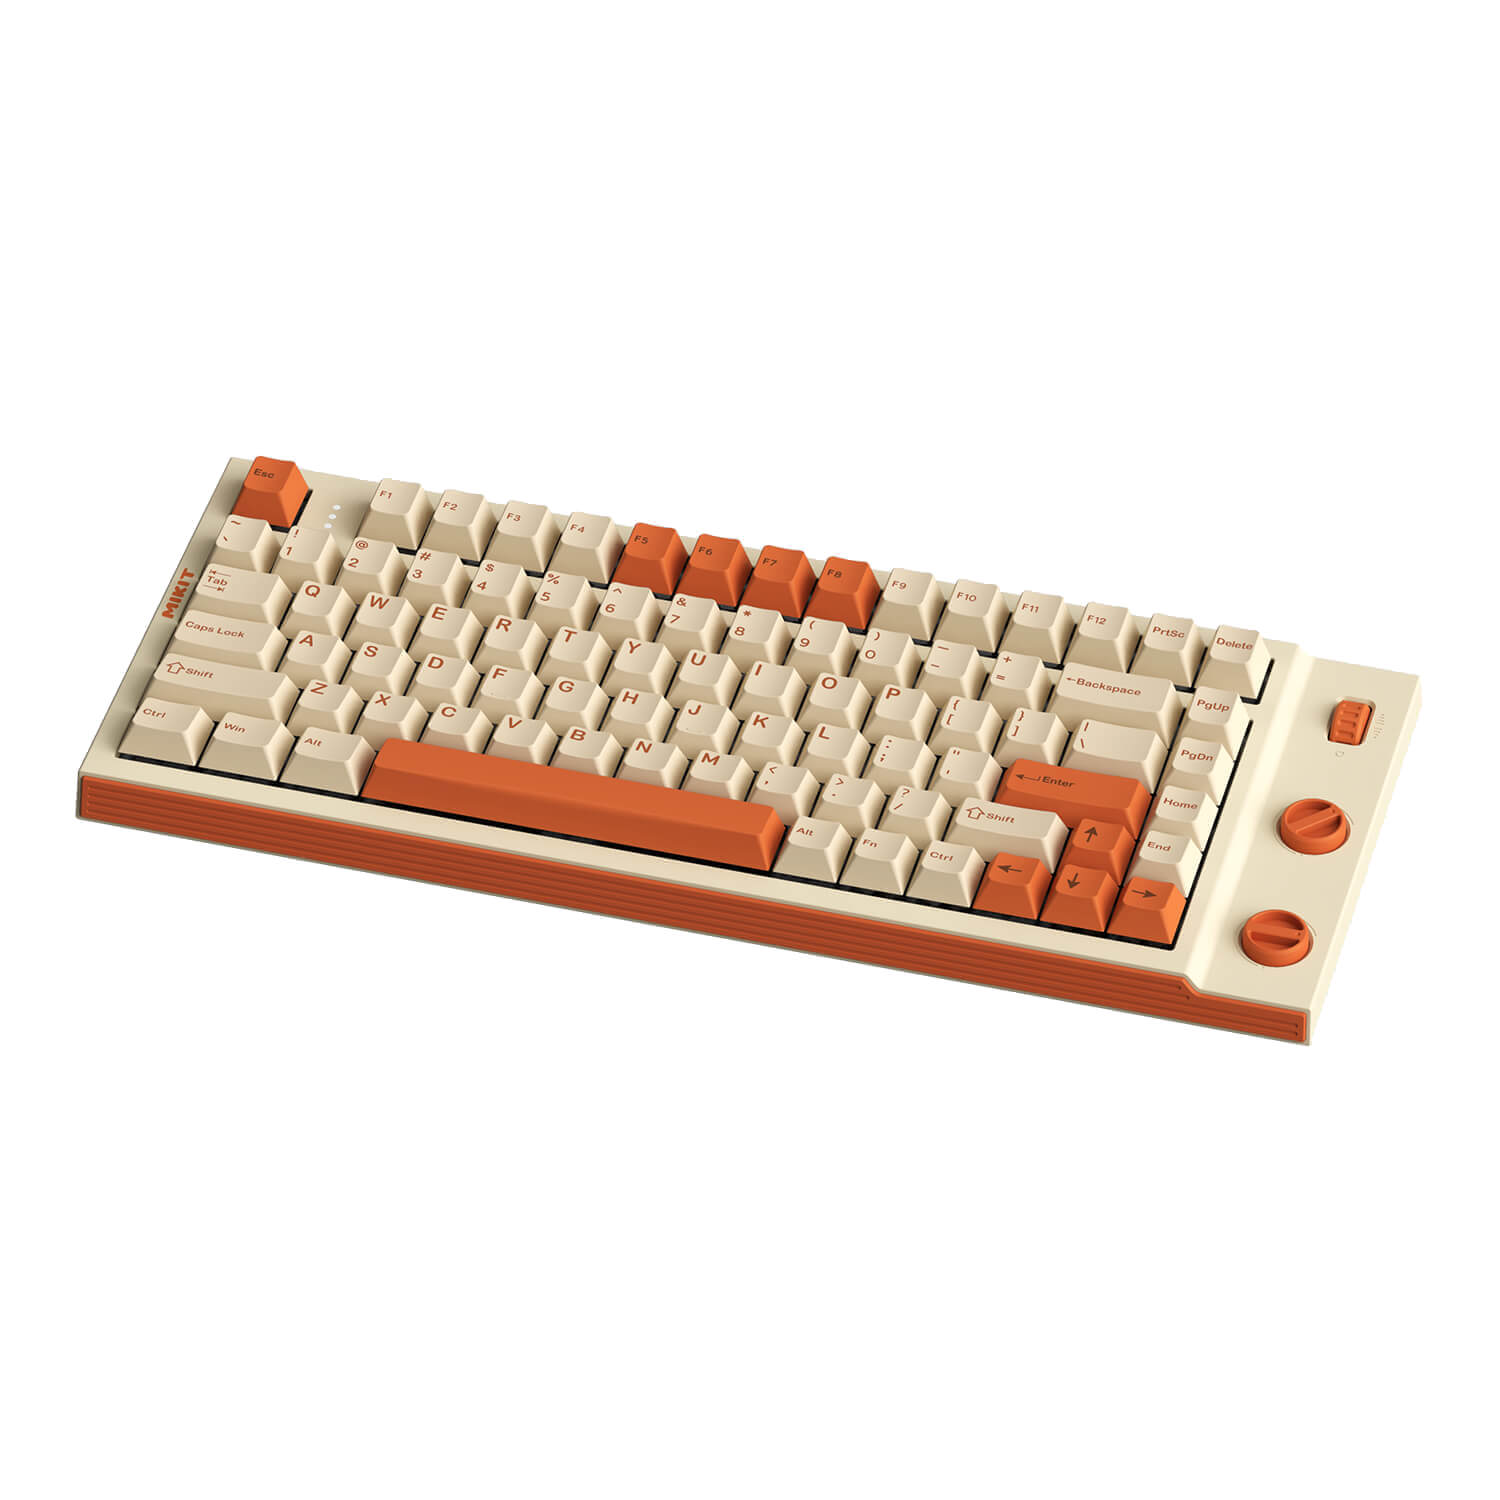 Compact keyboard space-saving keyboard TKL Gaming keyboard